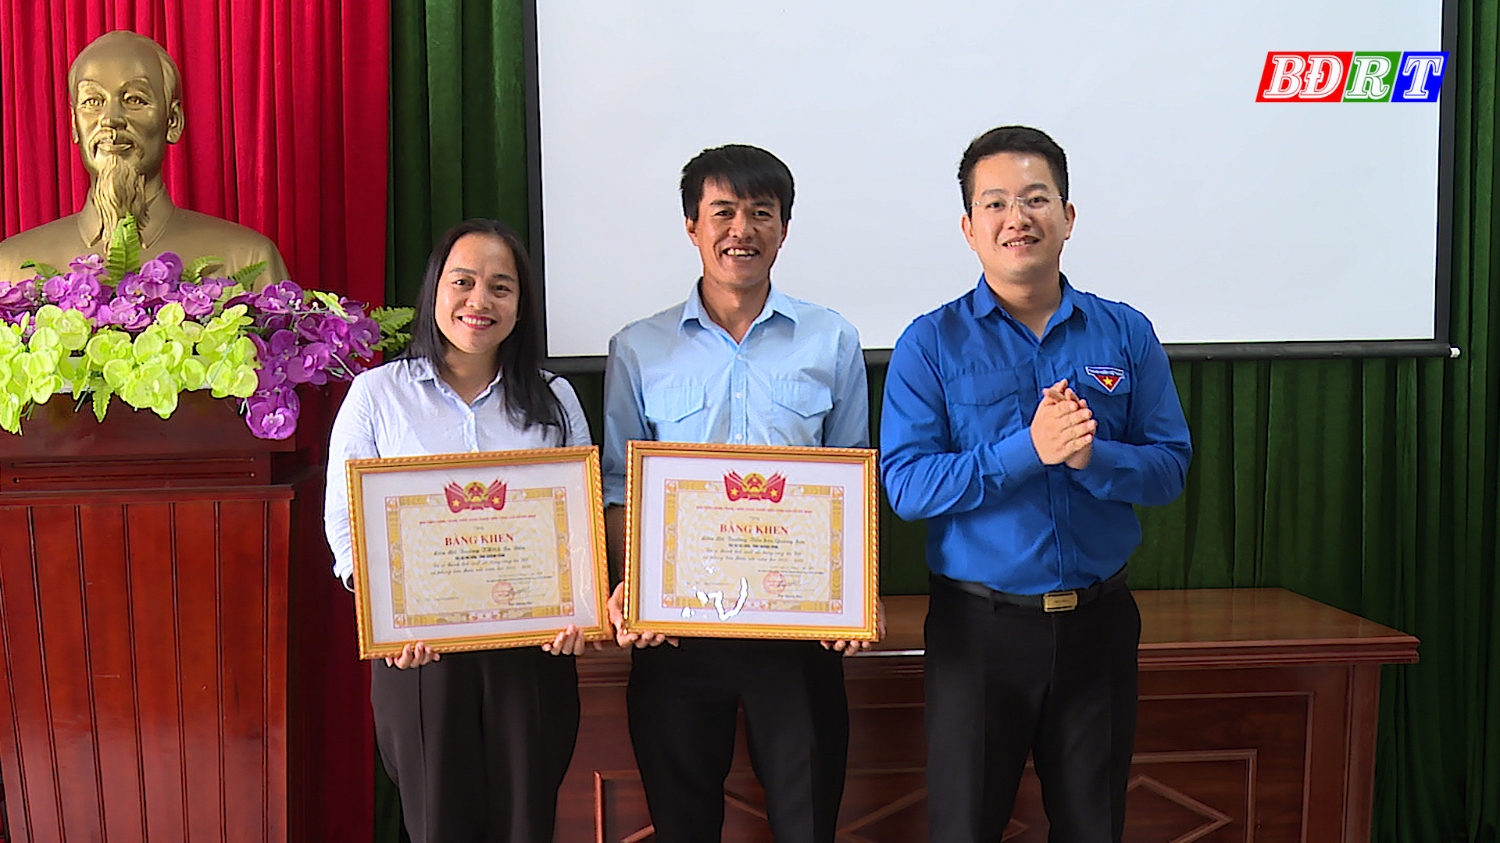 Tỉnh đoàn Quảng Bình tặng bằng khen cho cá nhân có thành tích xuất sắc trong công tác đội và phong trào thanh thiếu nhi